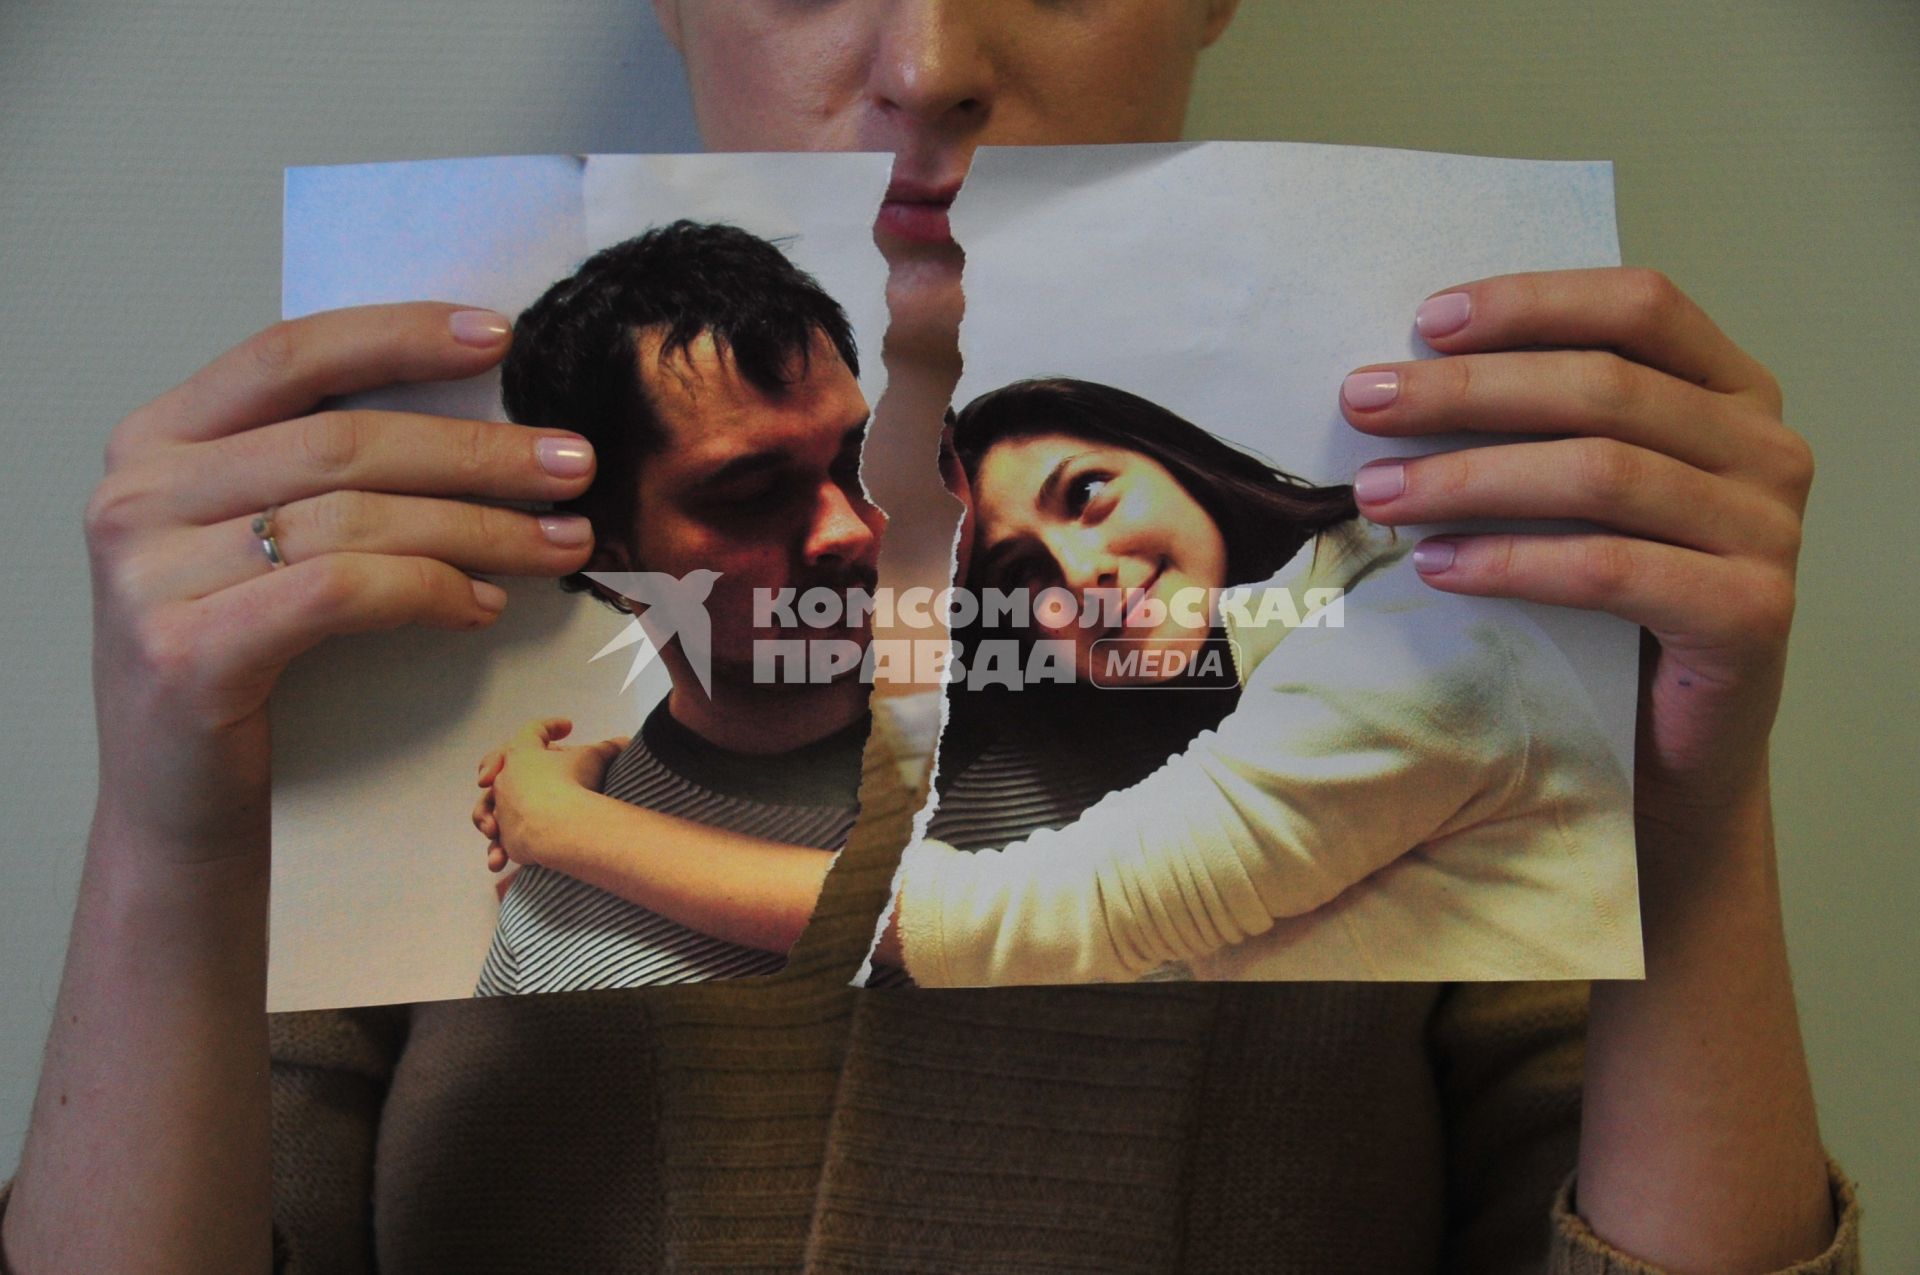 Жанровая фотография. На снимке: девушка разрывает фотографию, изображающую влюбленную пару.